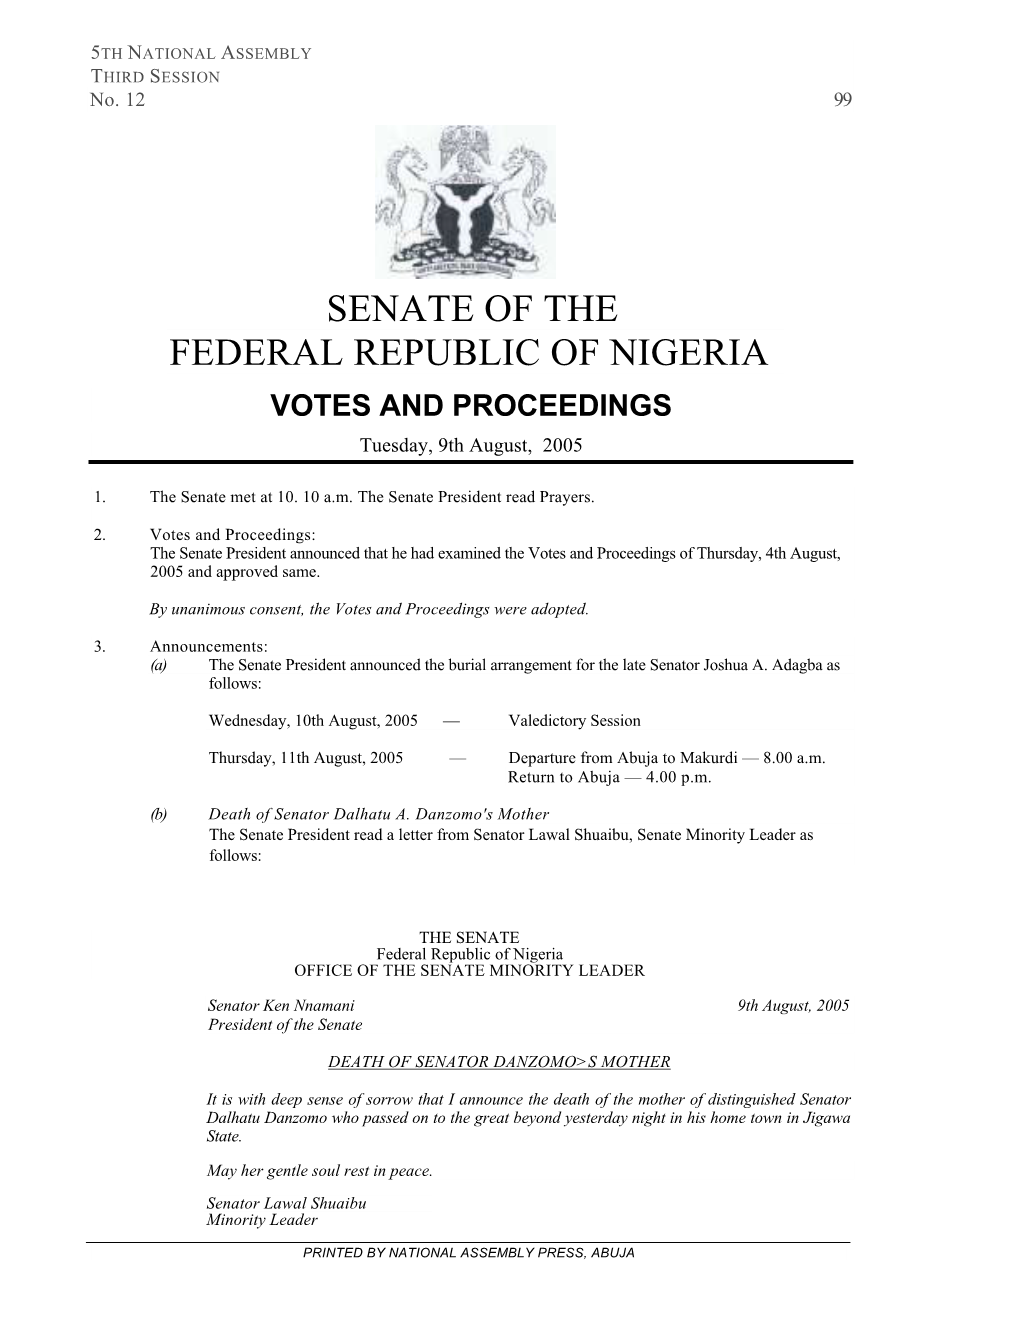 Senate of the Federal Republic of Nigeria